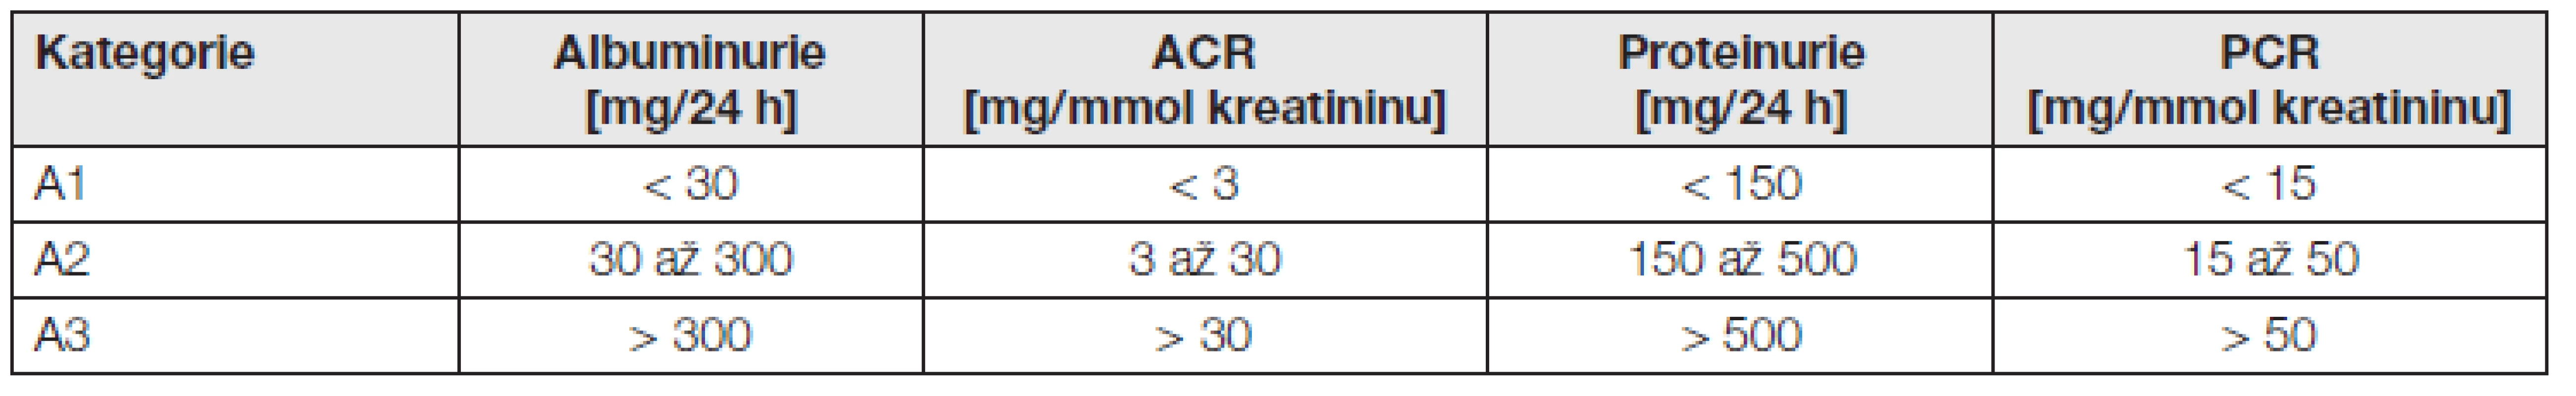 Kategorie CKD podle albuminurie a porovnání s proteinurií – podle [1].